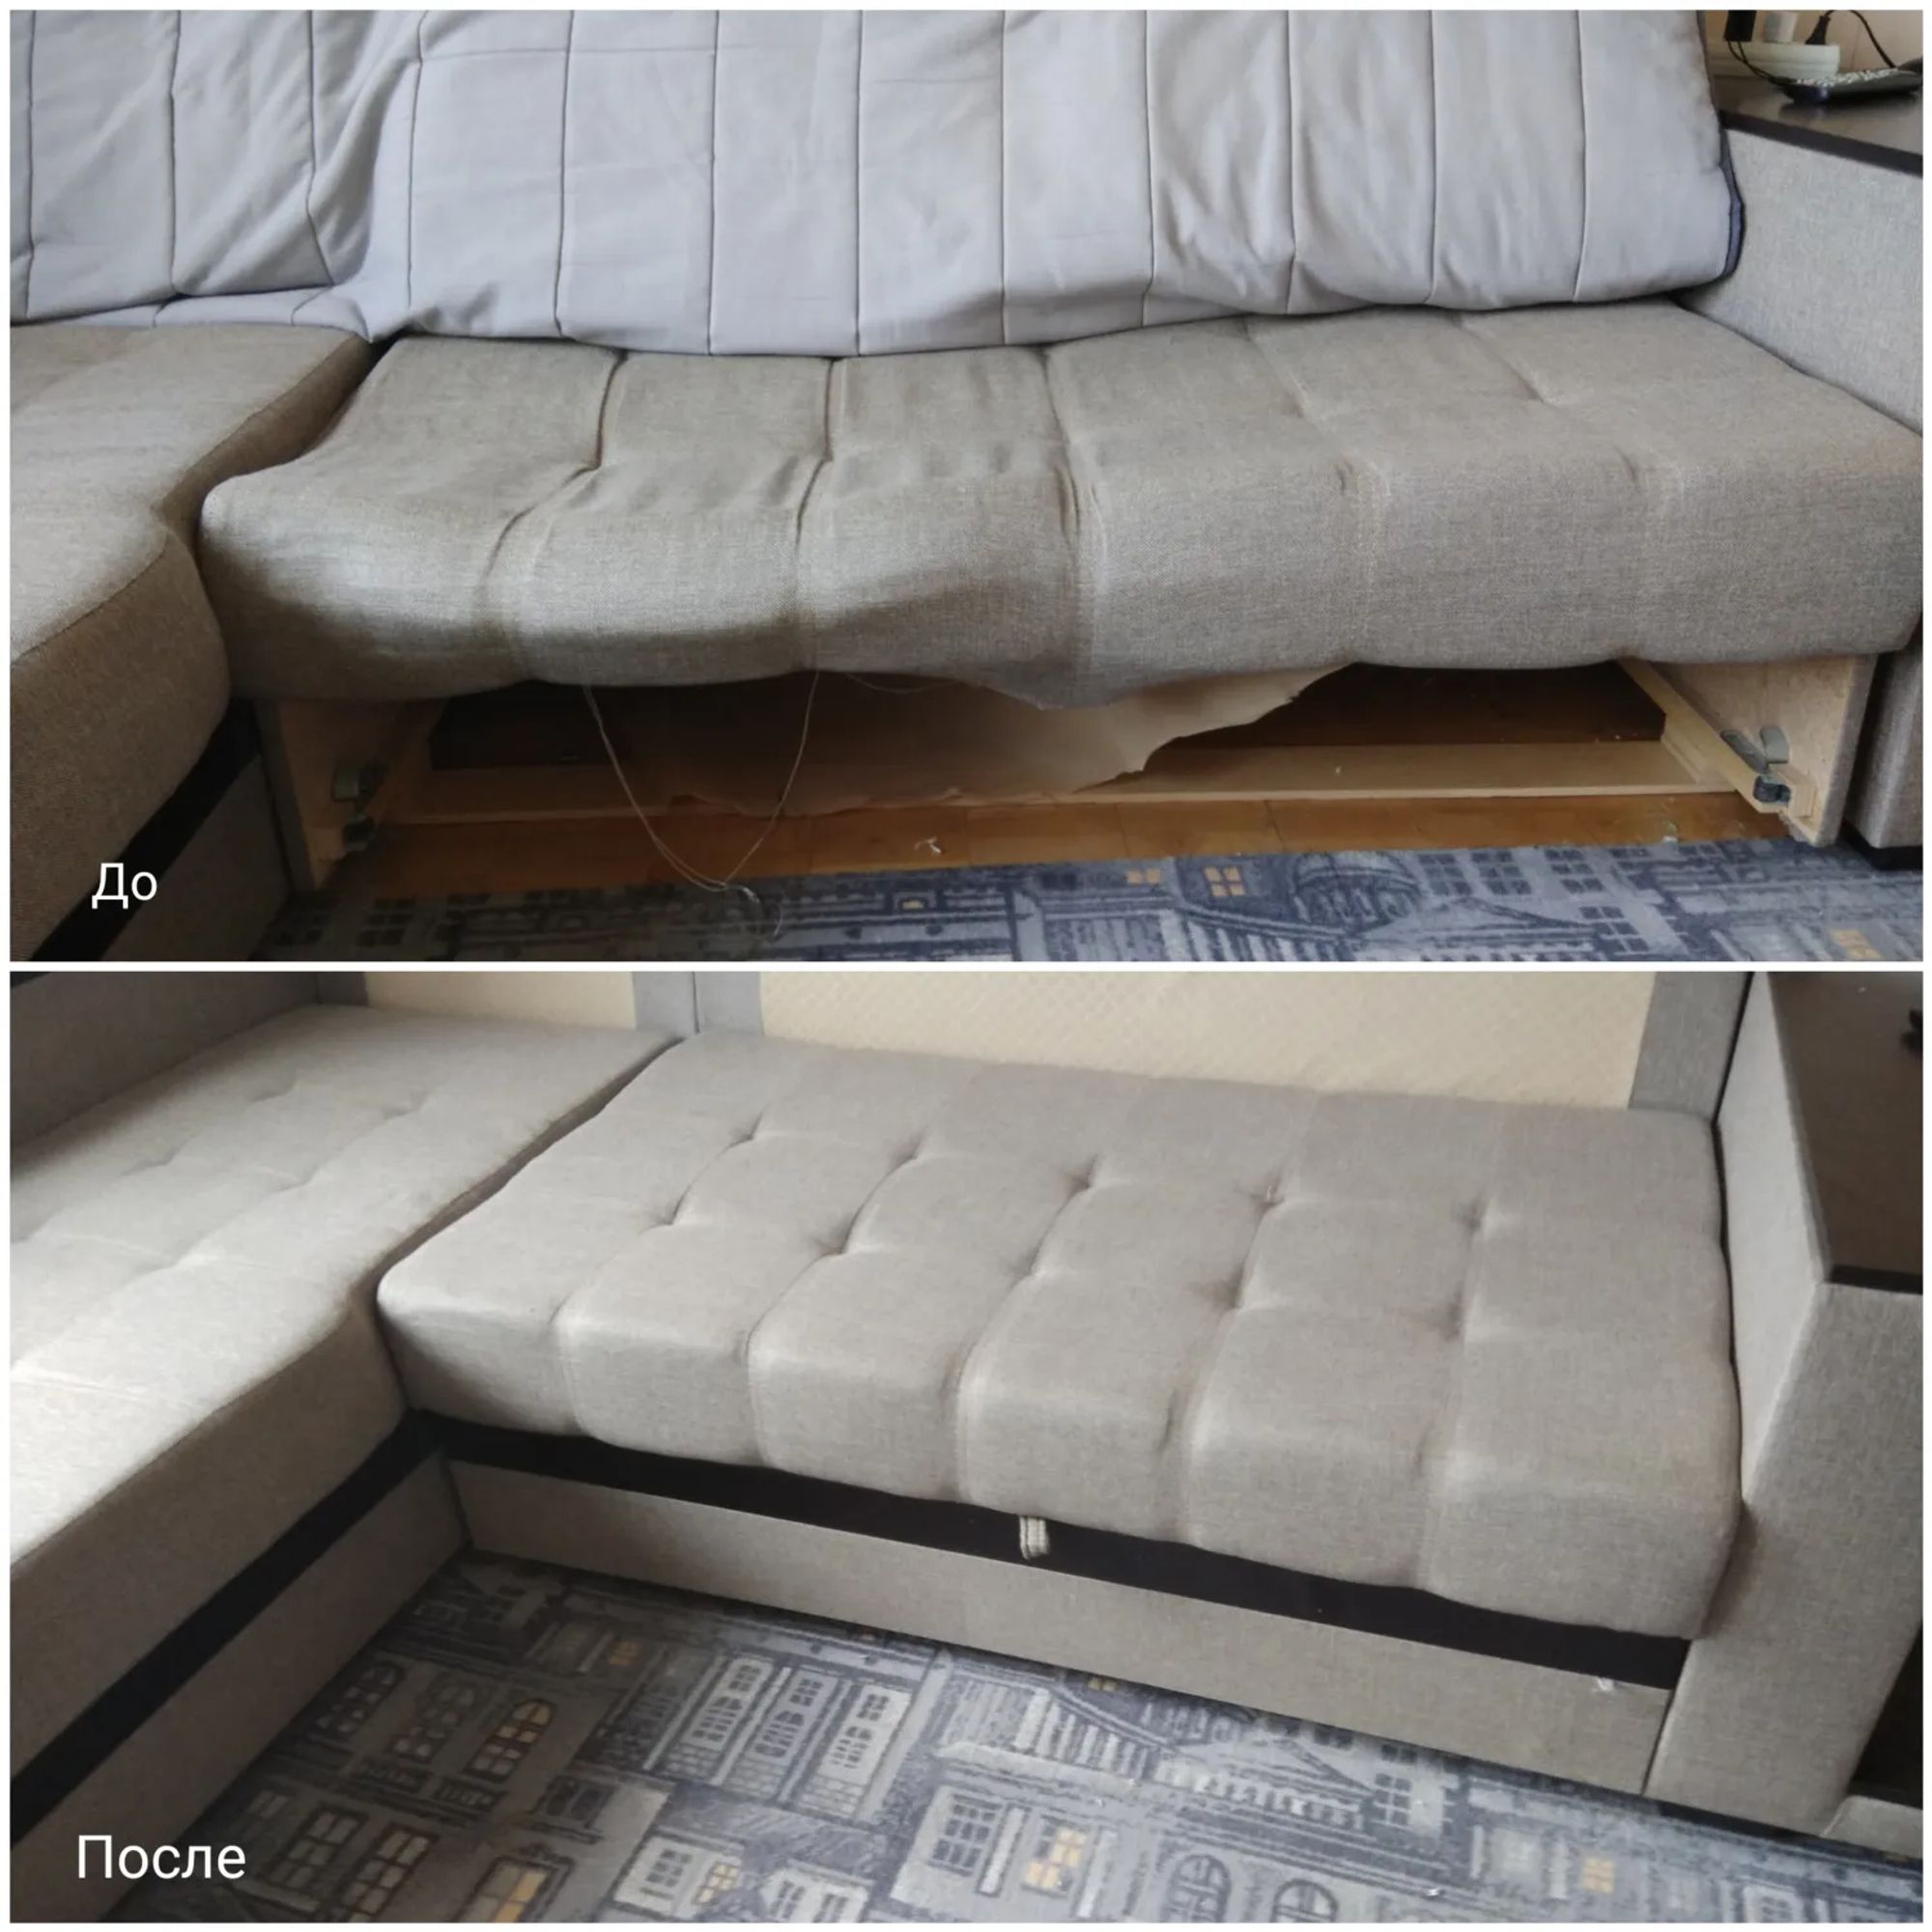 Заменить поролон на диване на пружины